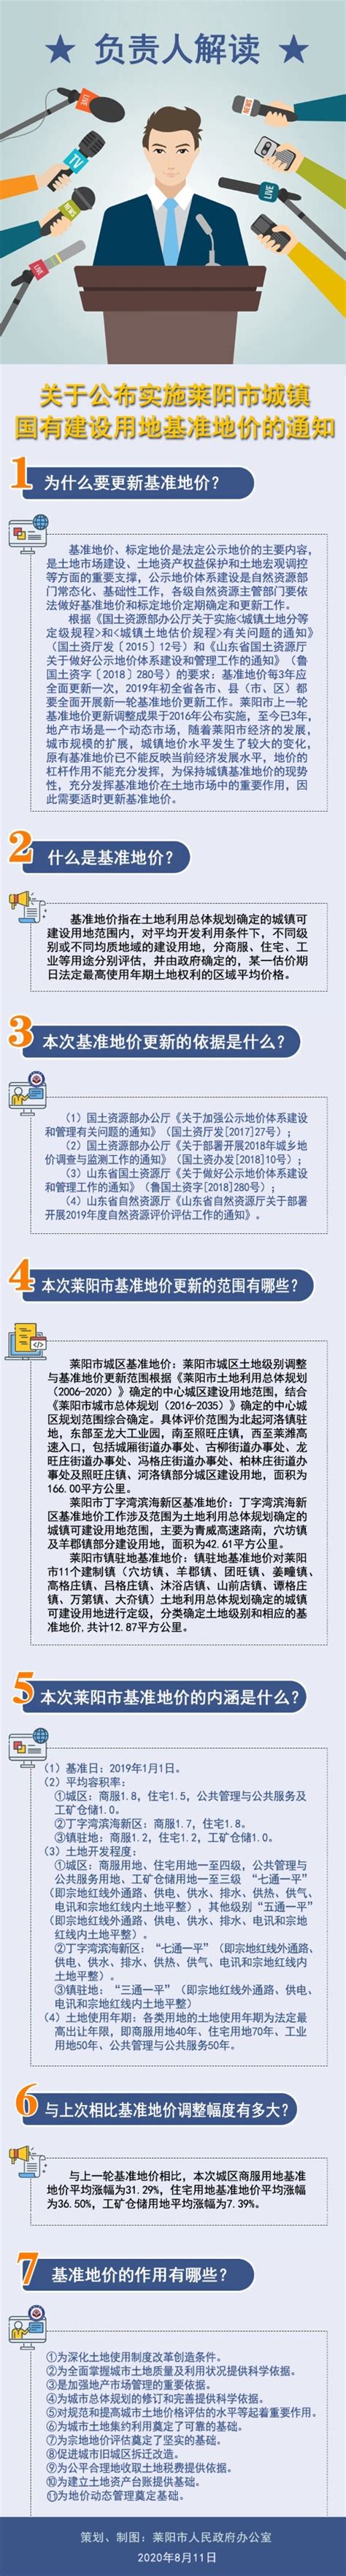 莱阳精心组织68个基础设施建设项目(组图) 莱阳 烟台新闻网 胶东在线 国家批准的重点新闻网站